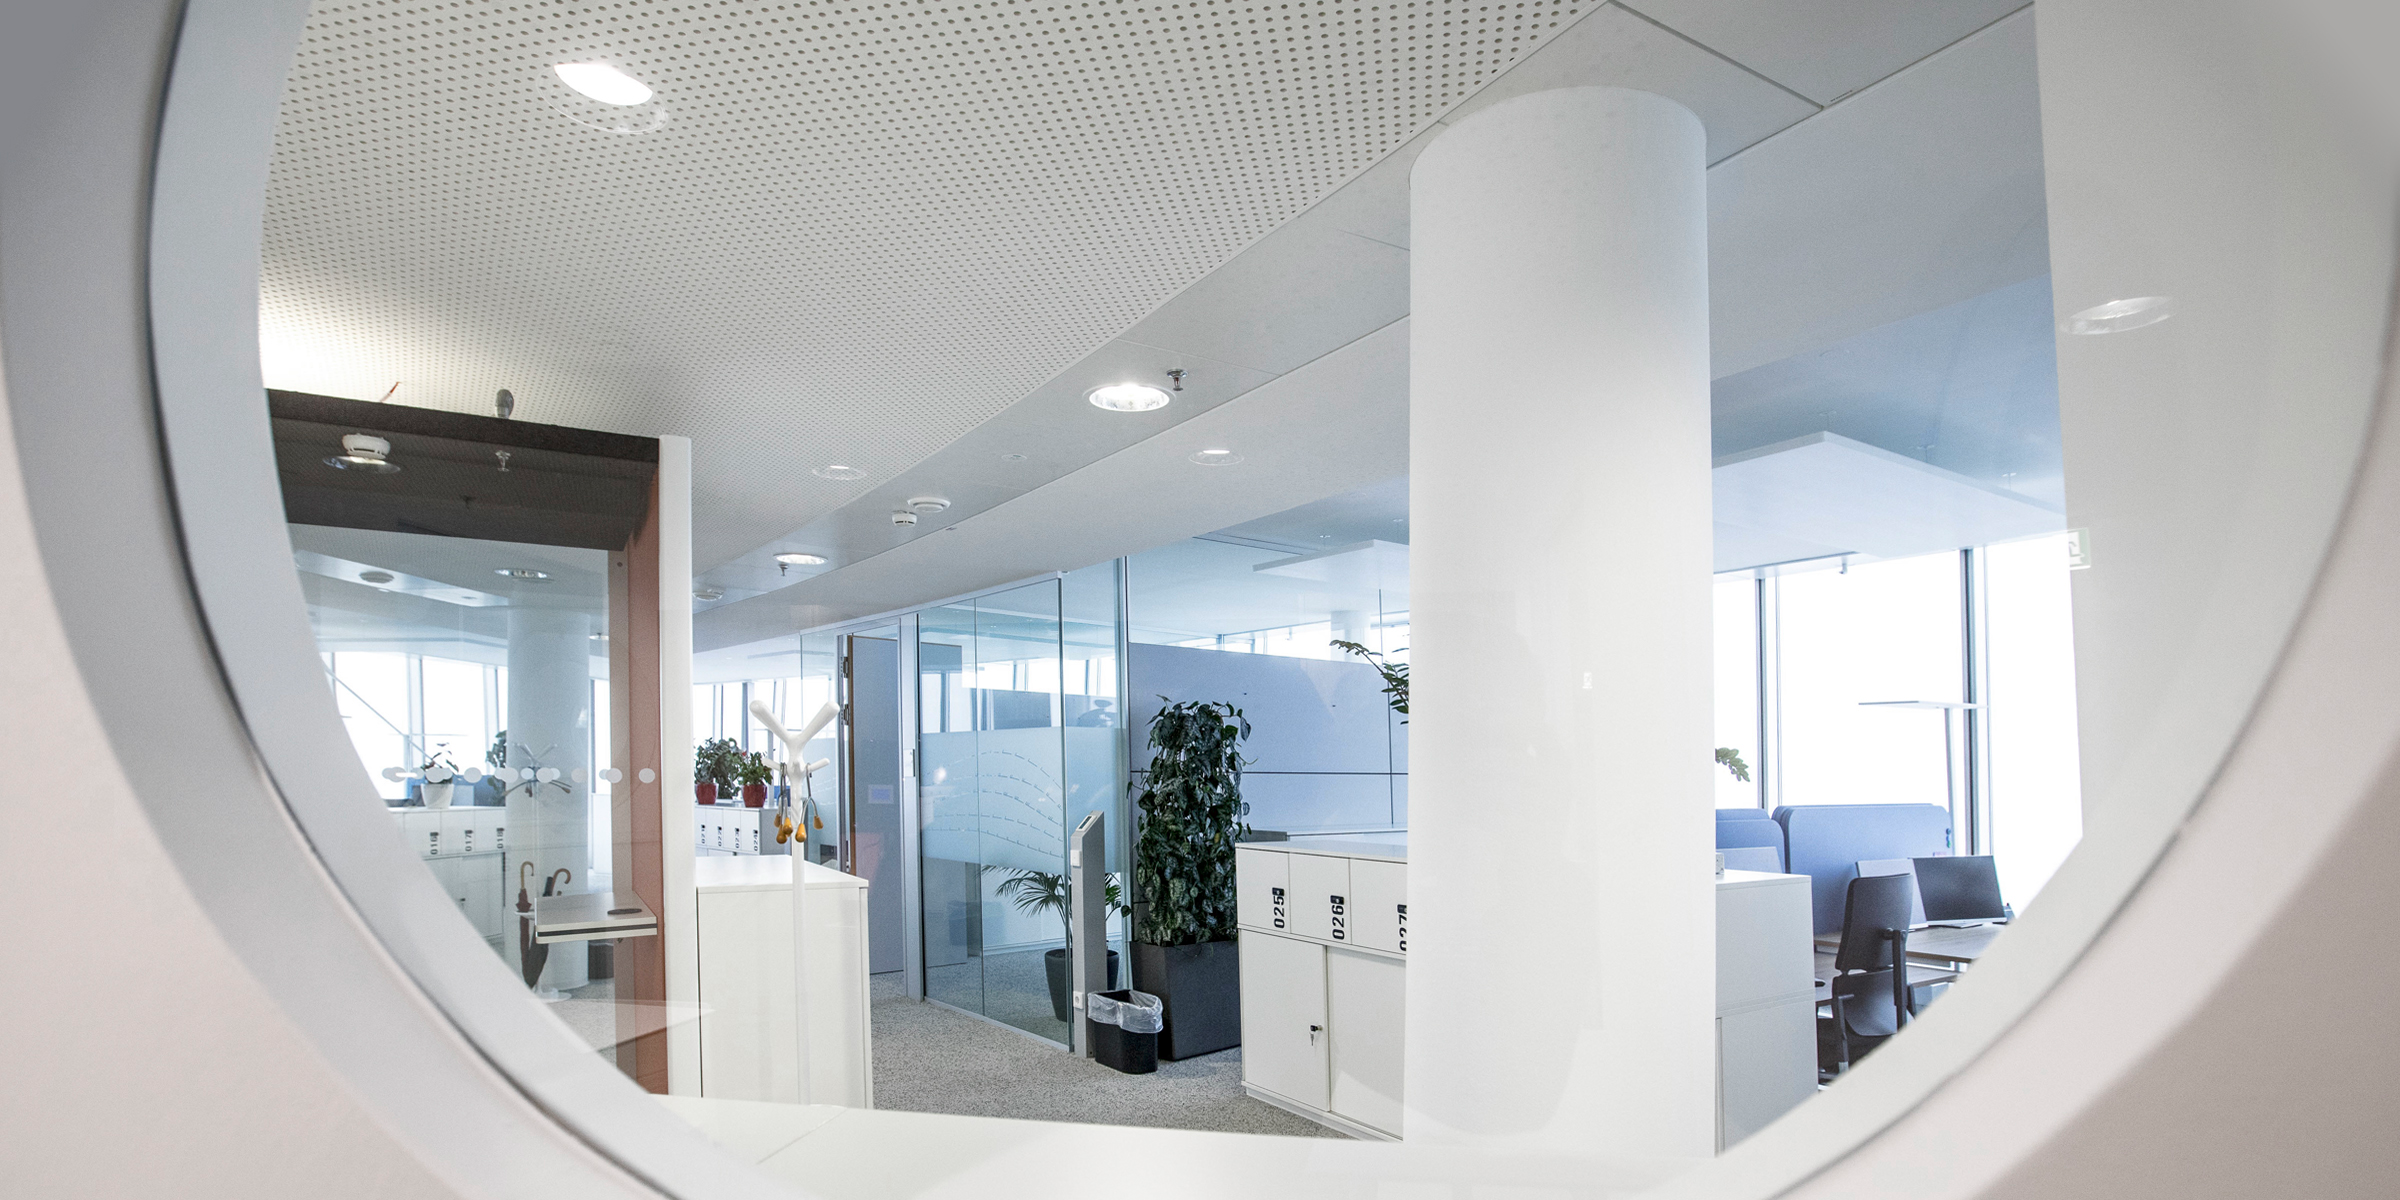 Blick durch ein rundes Bullauge auf ein helles Bürointerieur mit weißen Säulen, Büroschränken und Arbeitsbereichen im Hintergrund.